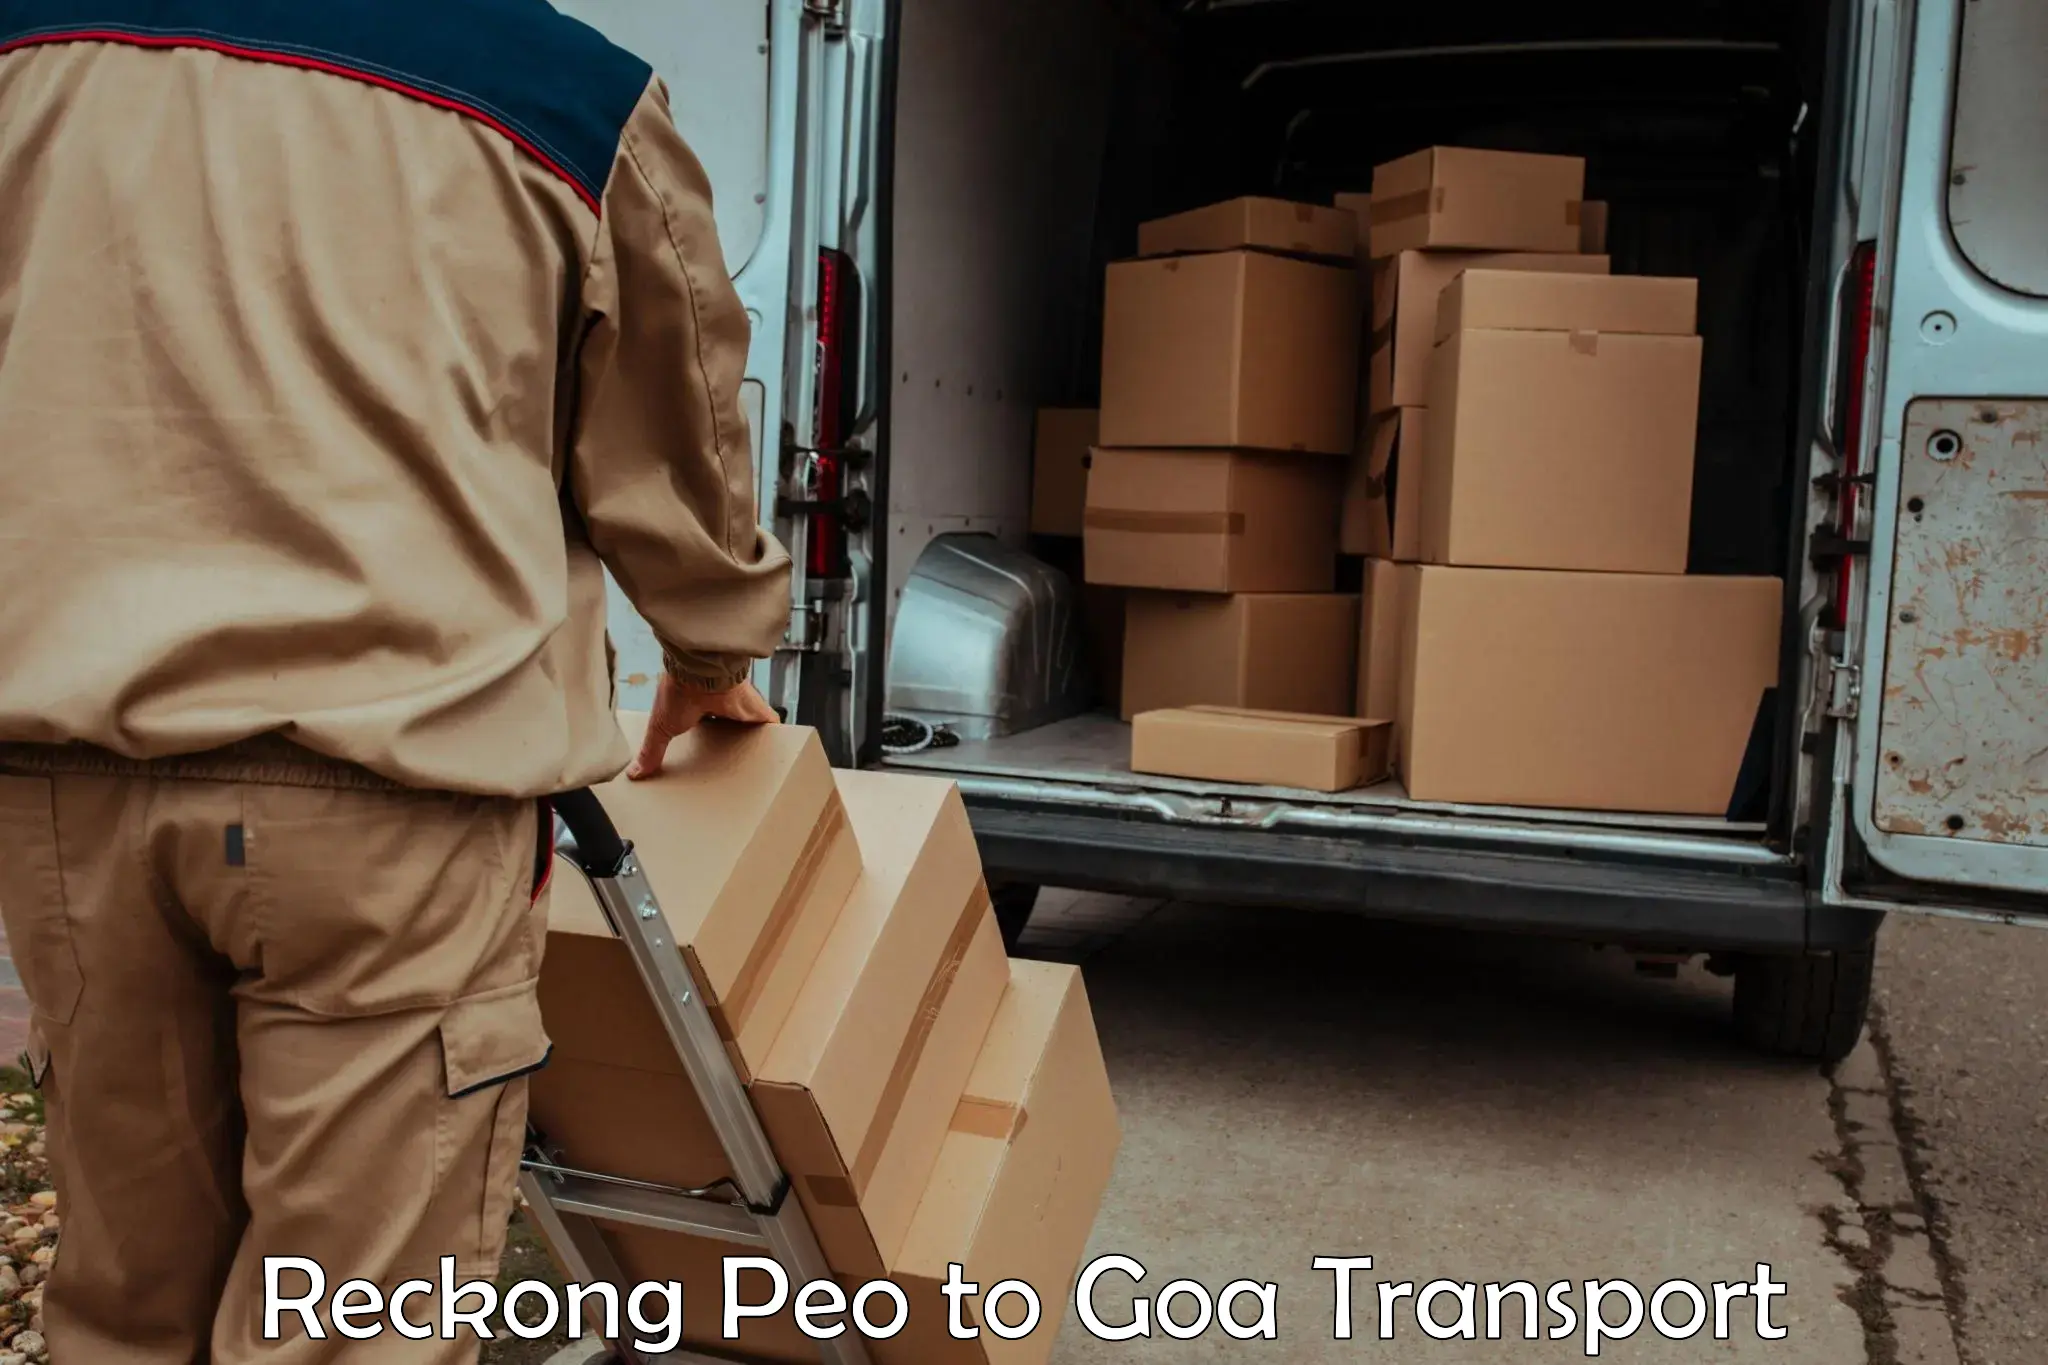 Transport in sharing in Reckong Peo to Panjim